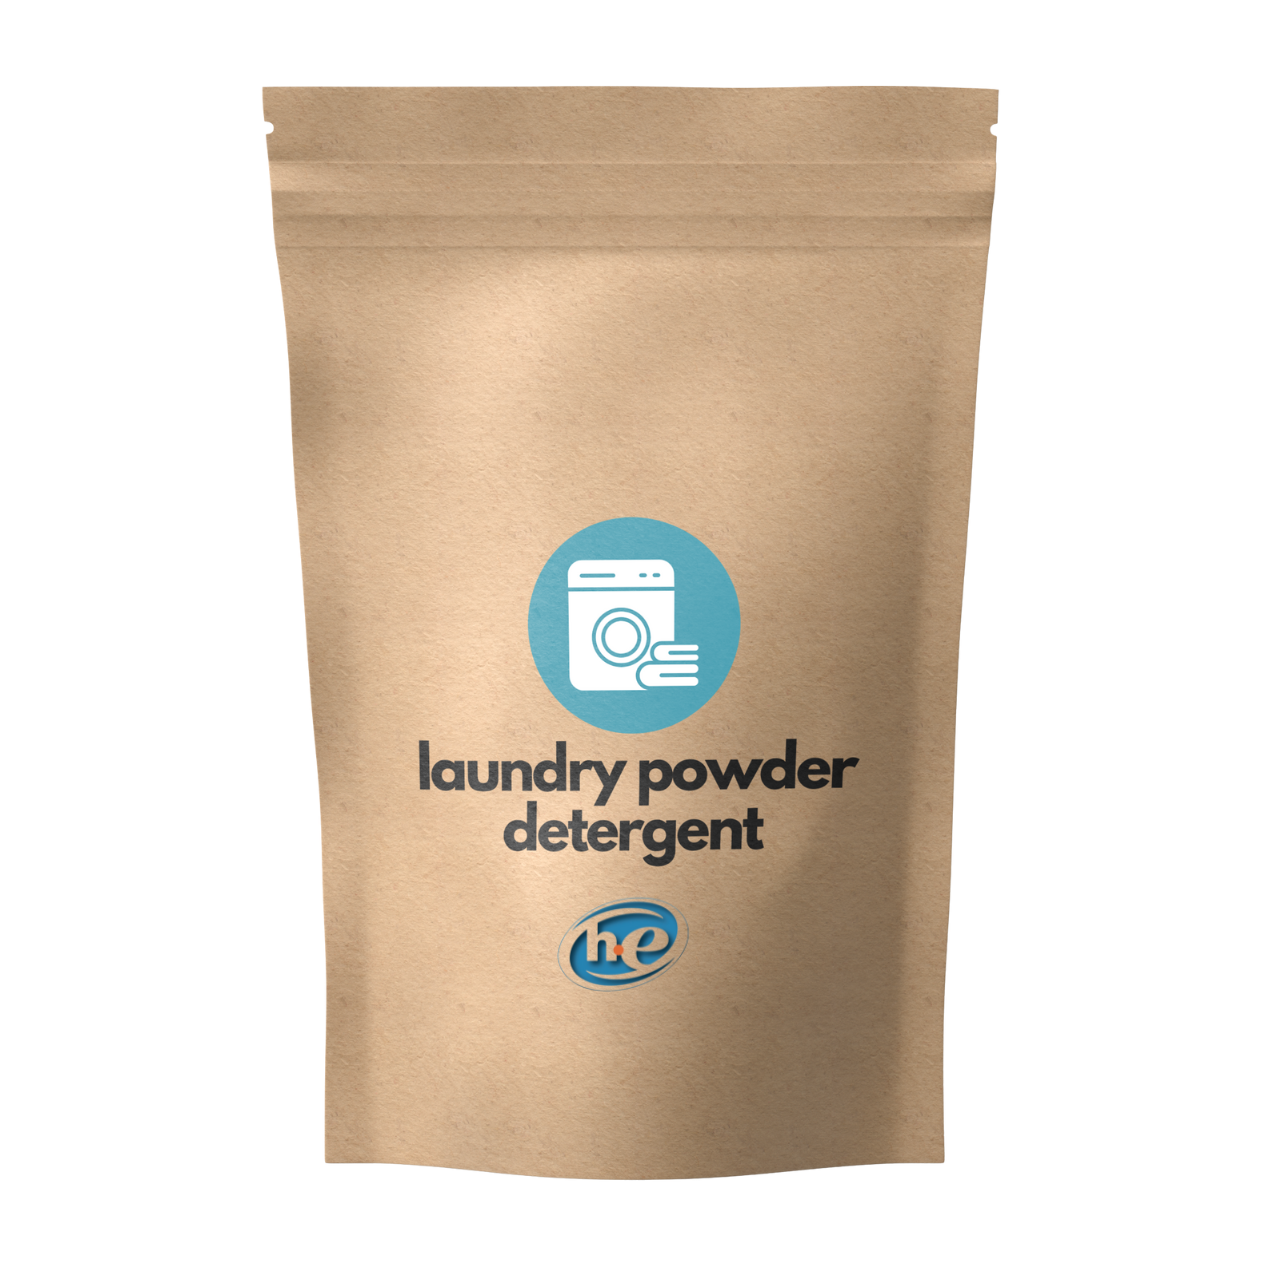 Laundry Powder Detergent (Unscented)